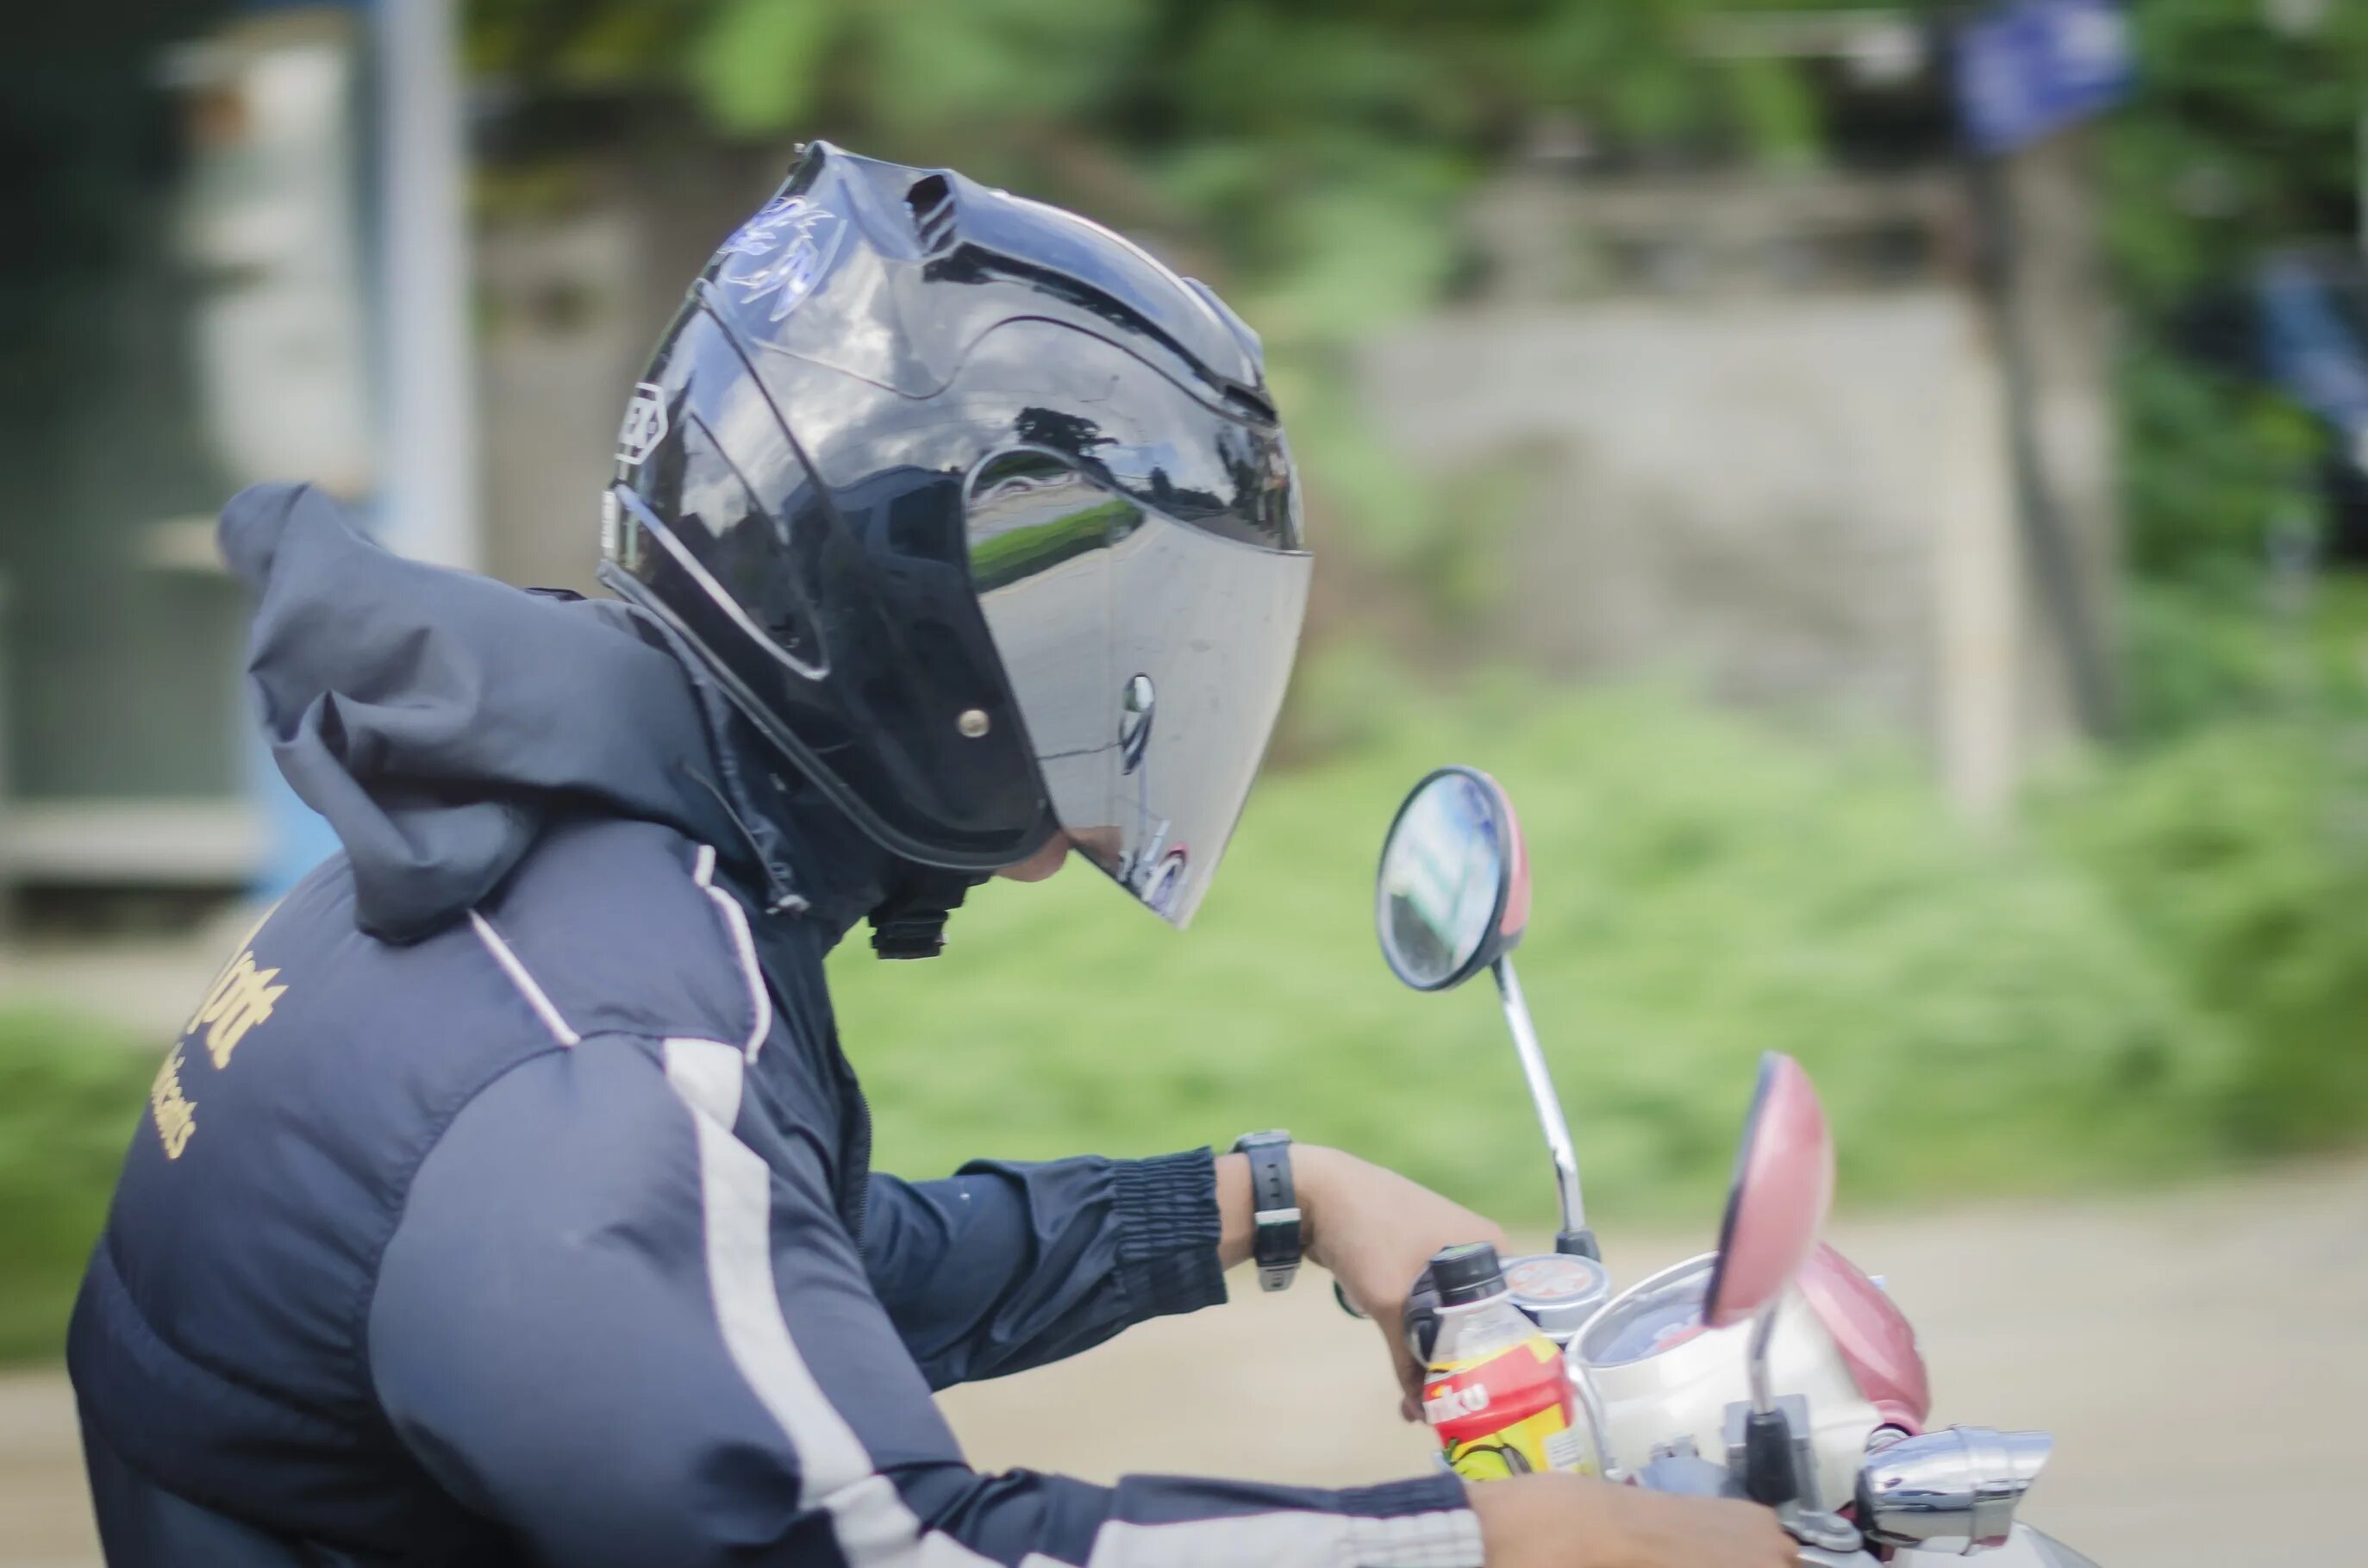 Мотоциклист в шлеме. Человек в мотошлеме. Шлем для мотоцикла. Каска мотоциклиста.